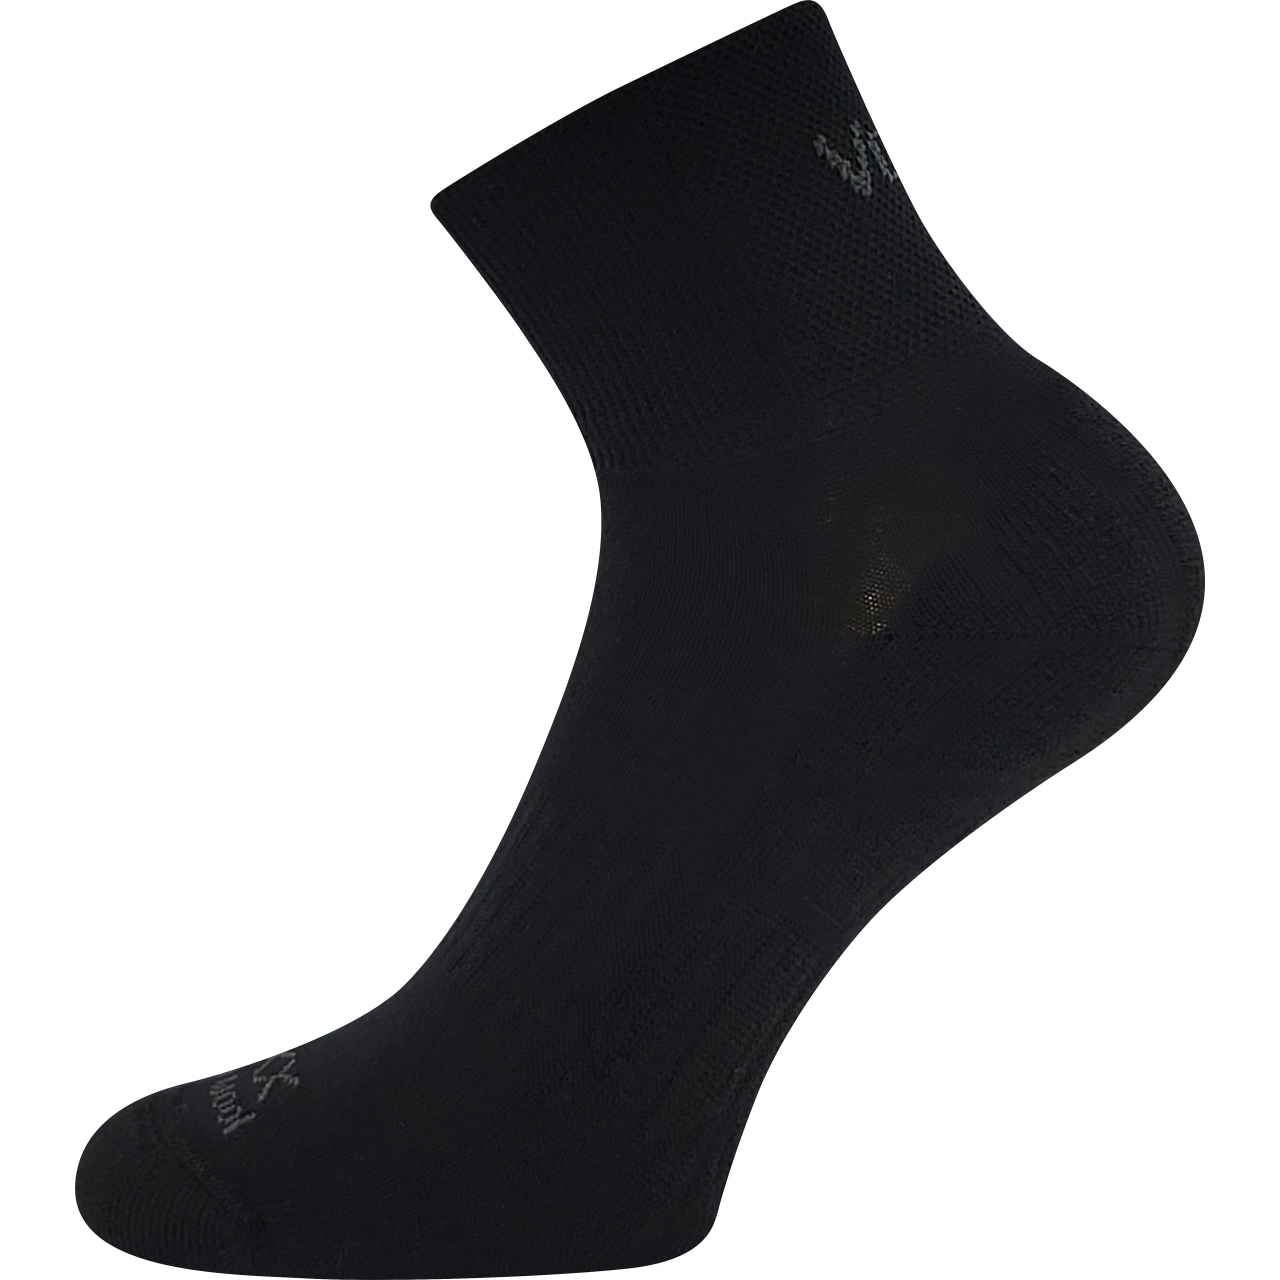 Ponožky unisex sportovní Voxx Twarix short - černé, 43-46